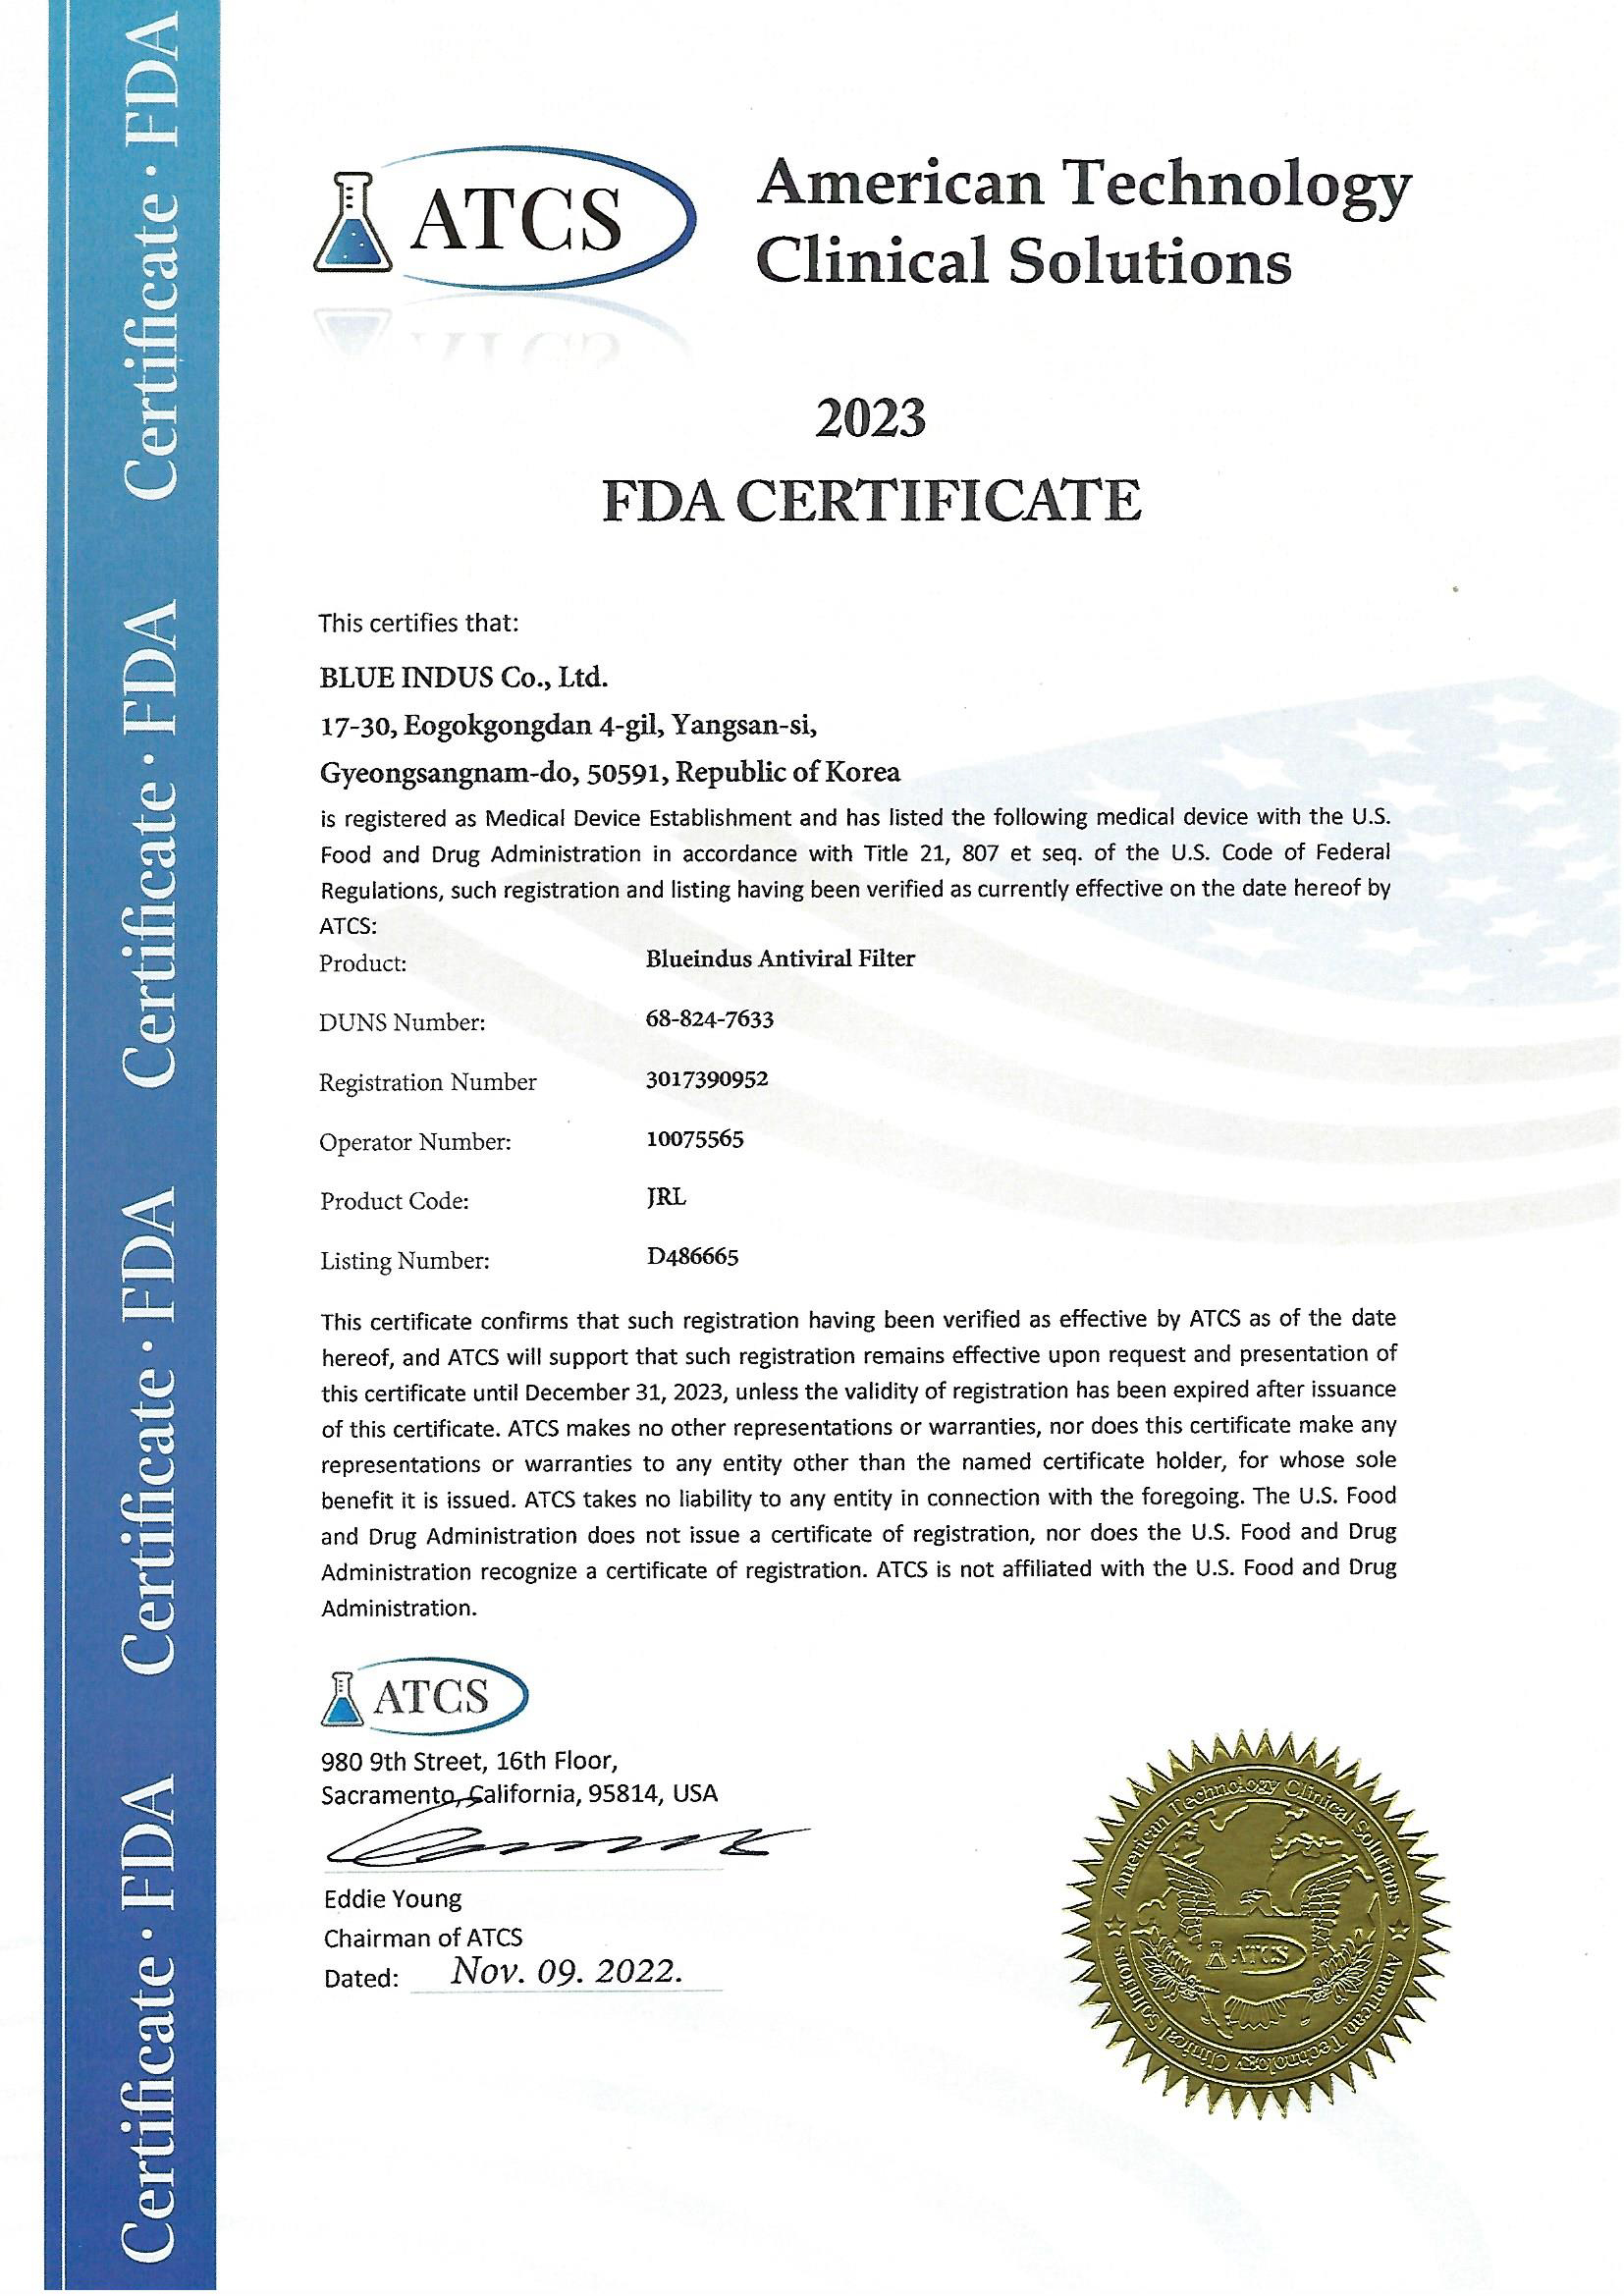 Antiviral filter FDA Certification